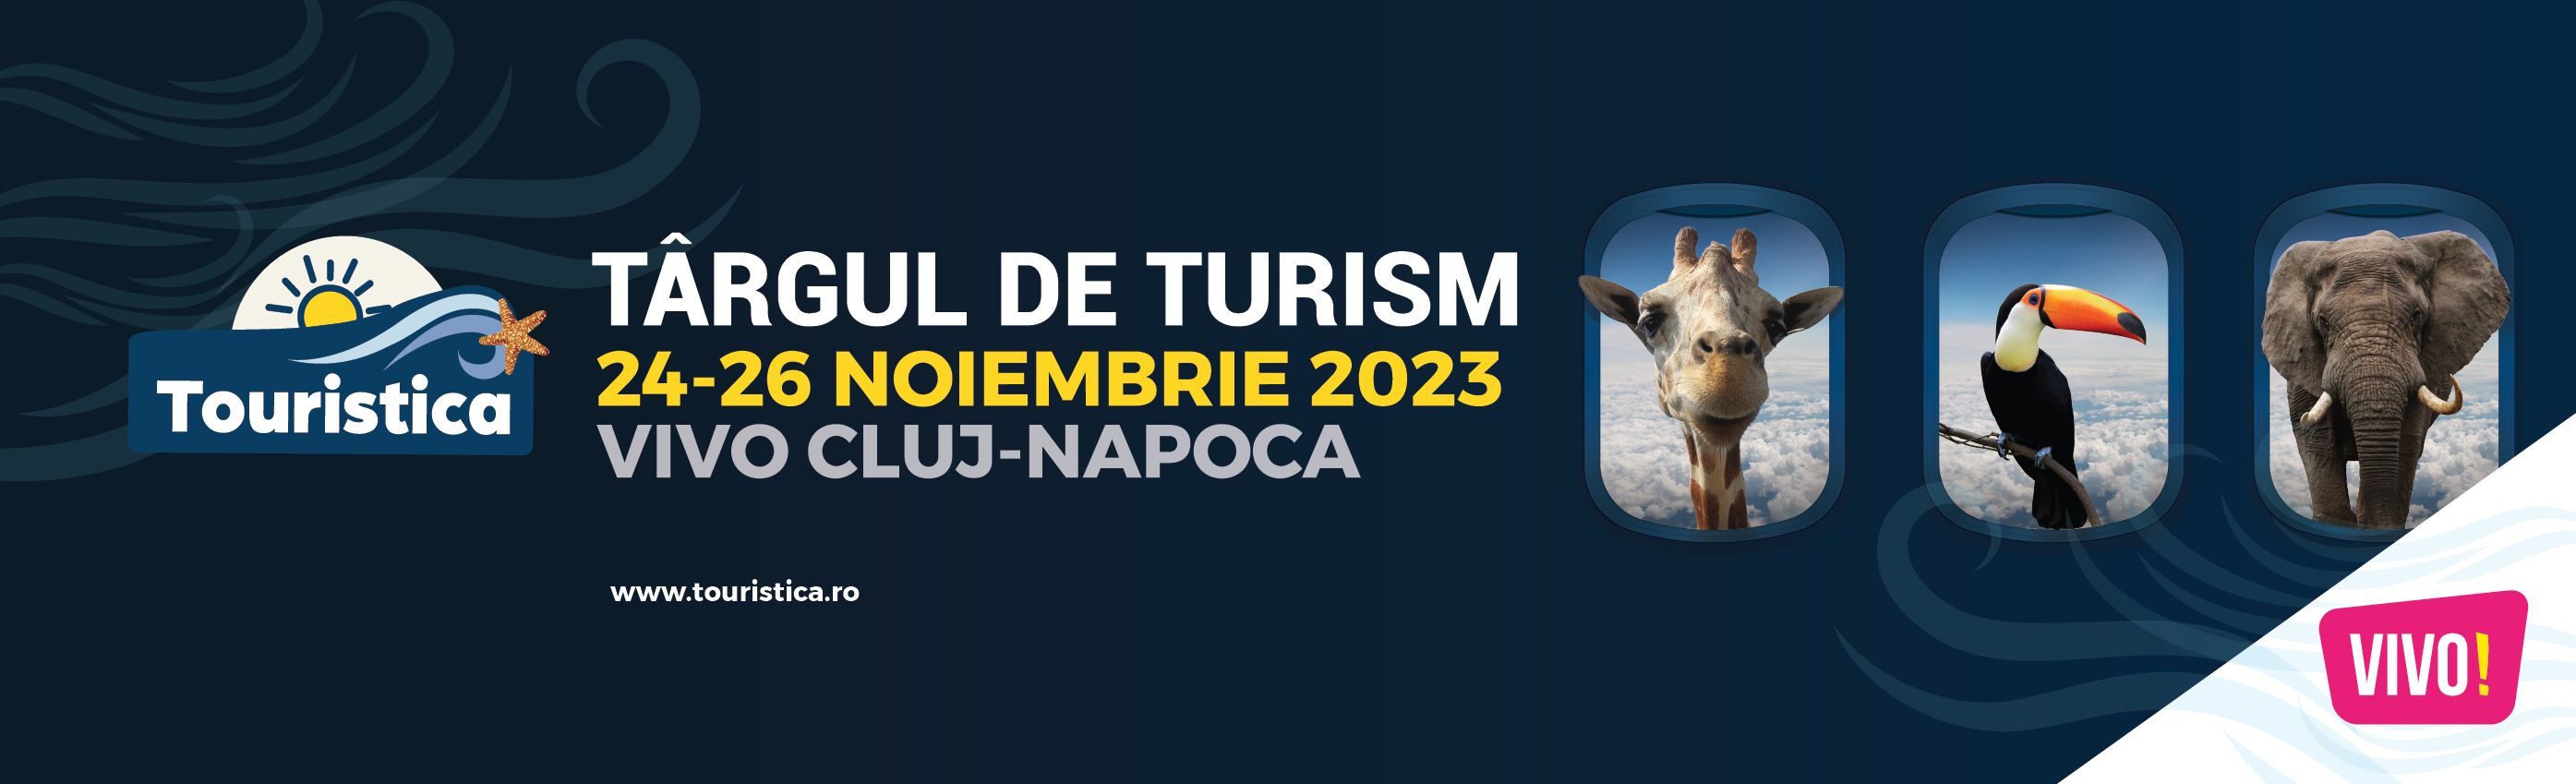 Targul de Turism Touristica revine cu noi pachete de calatorii la Cluj-Napoca